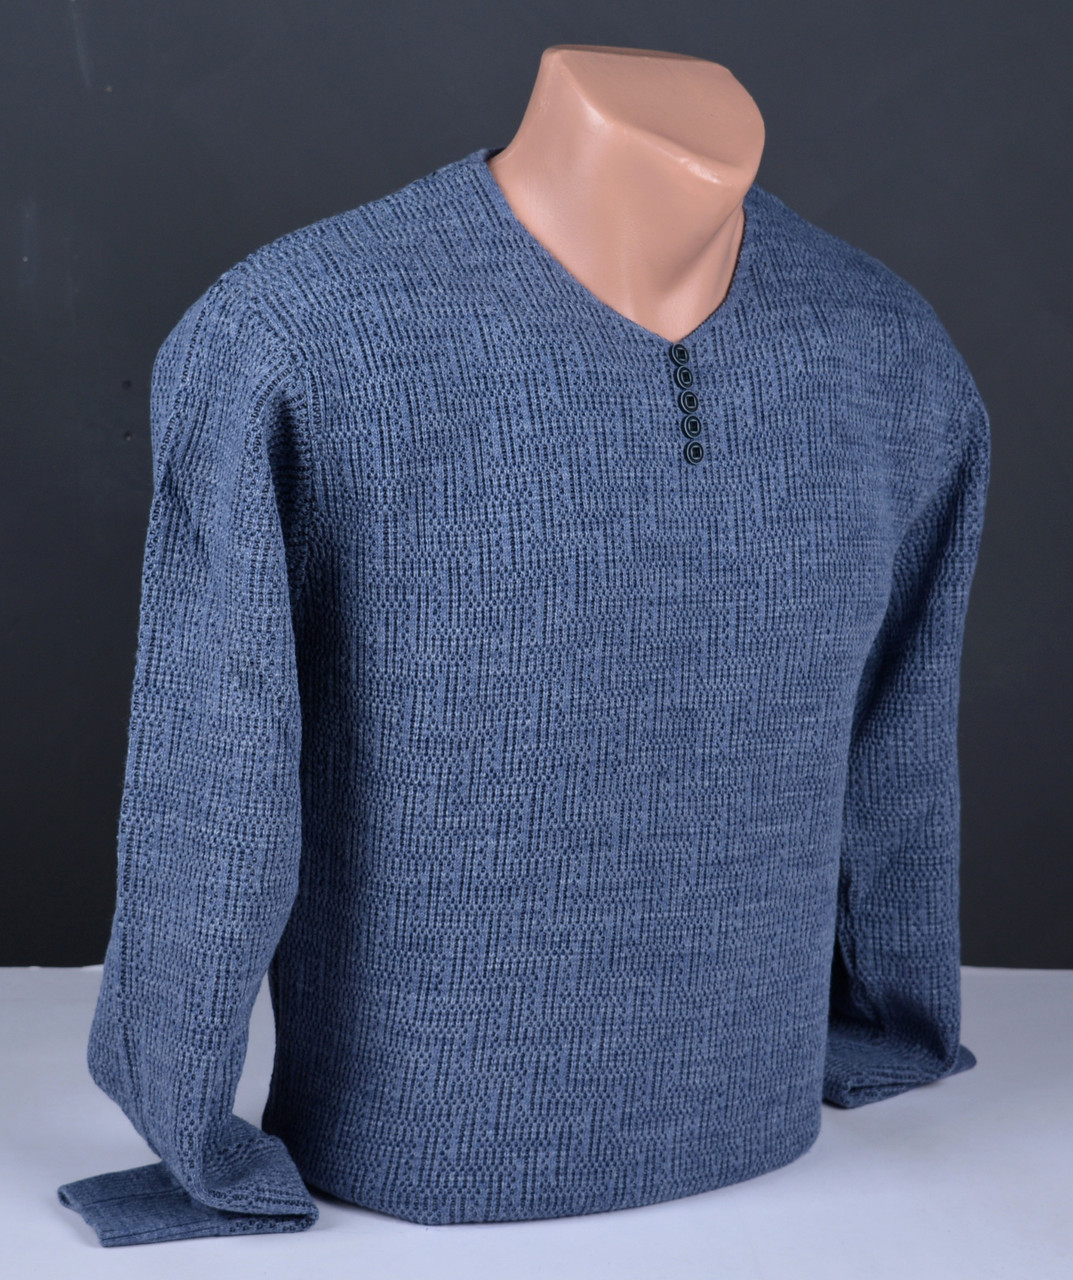 Чоловічий пуловер великого розміру | Чоловічий светр Vip Stendo синій Туреччина 9035 Б